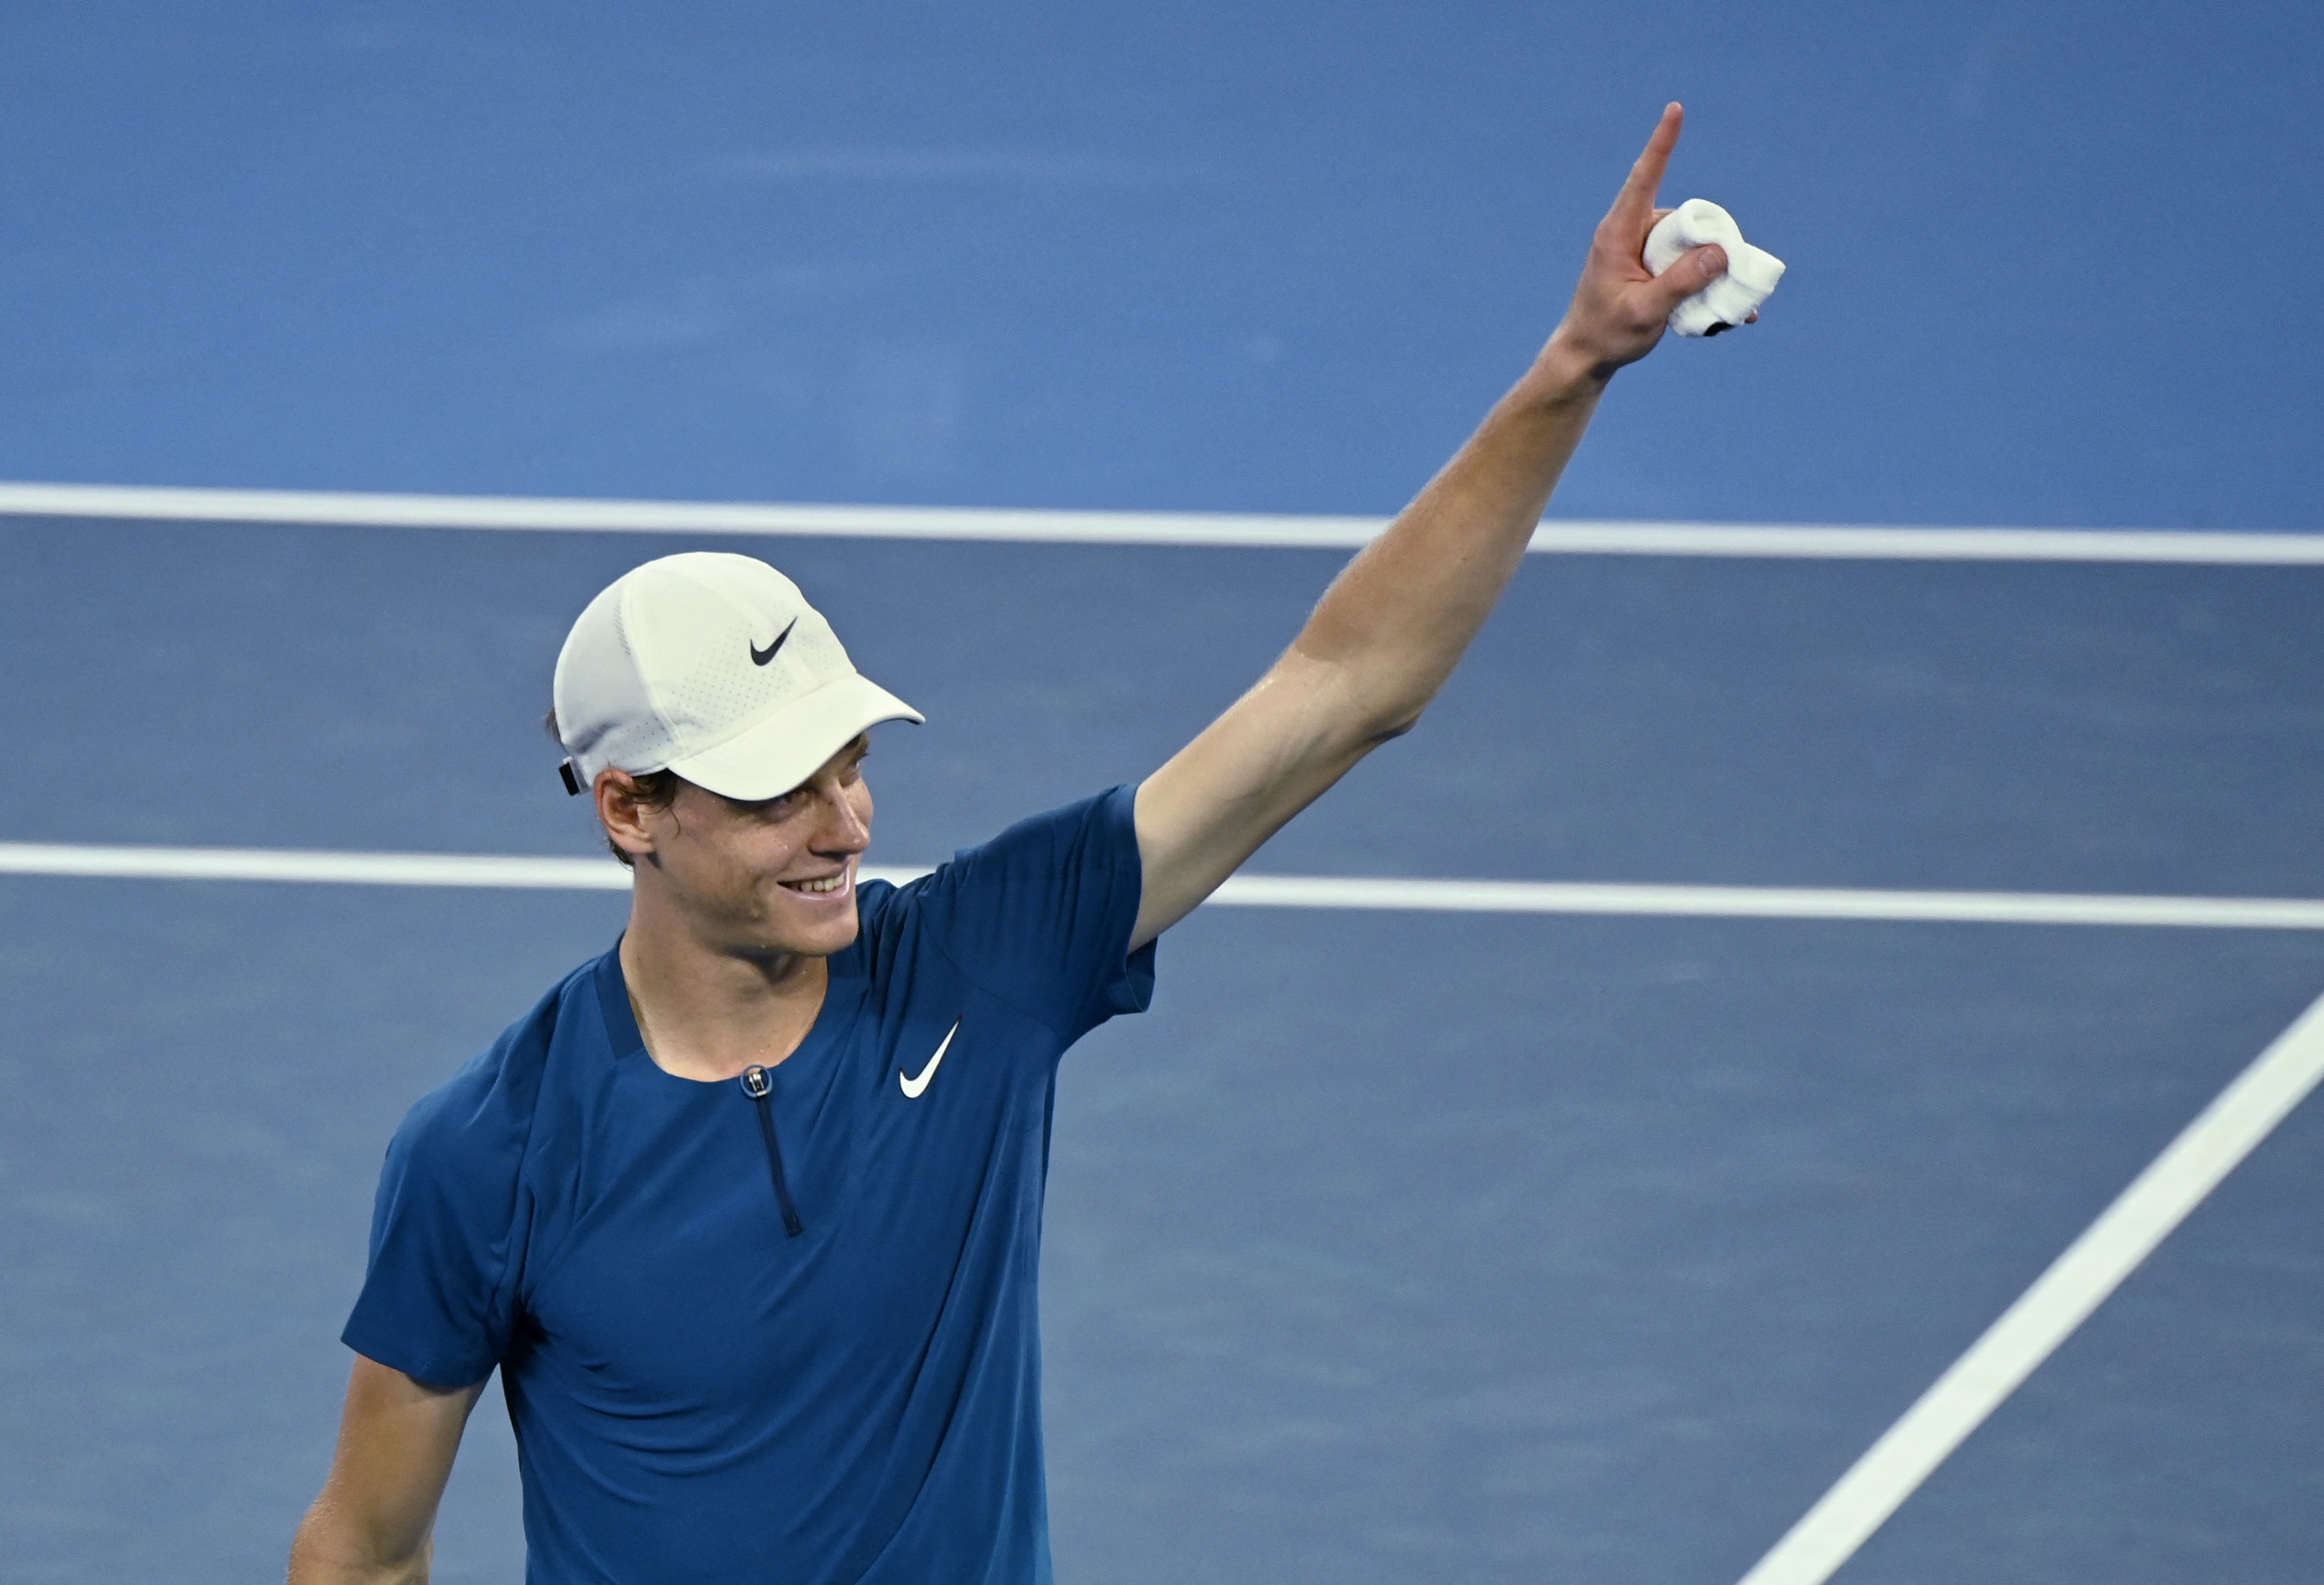 US Open Day 5: Djokovic survives, Rybakina stumbles - Roland